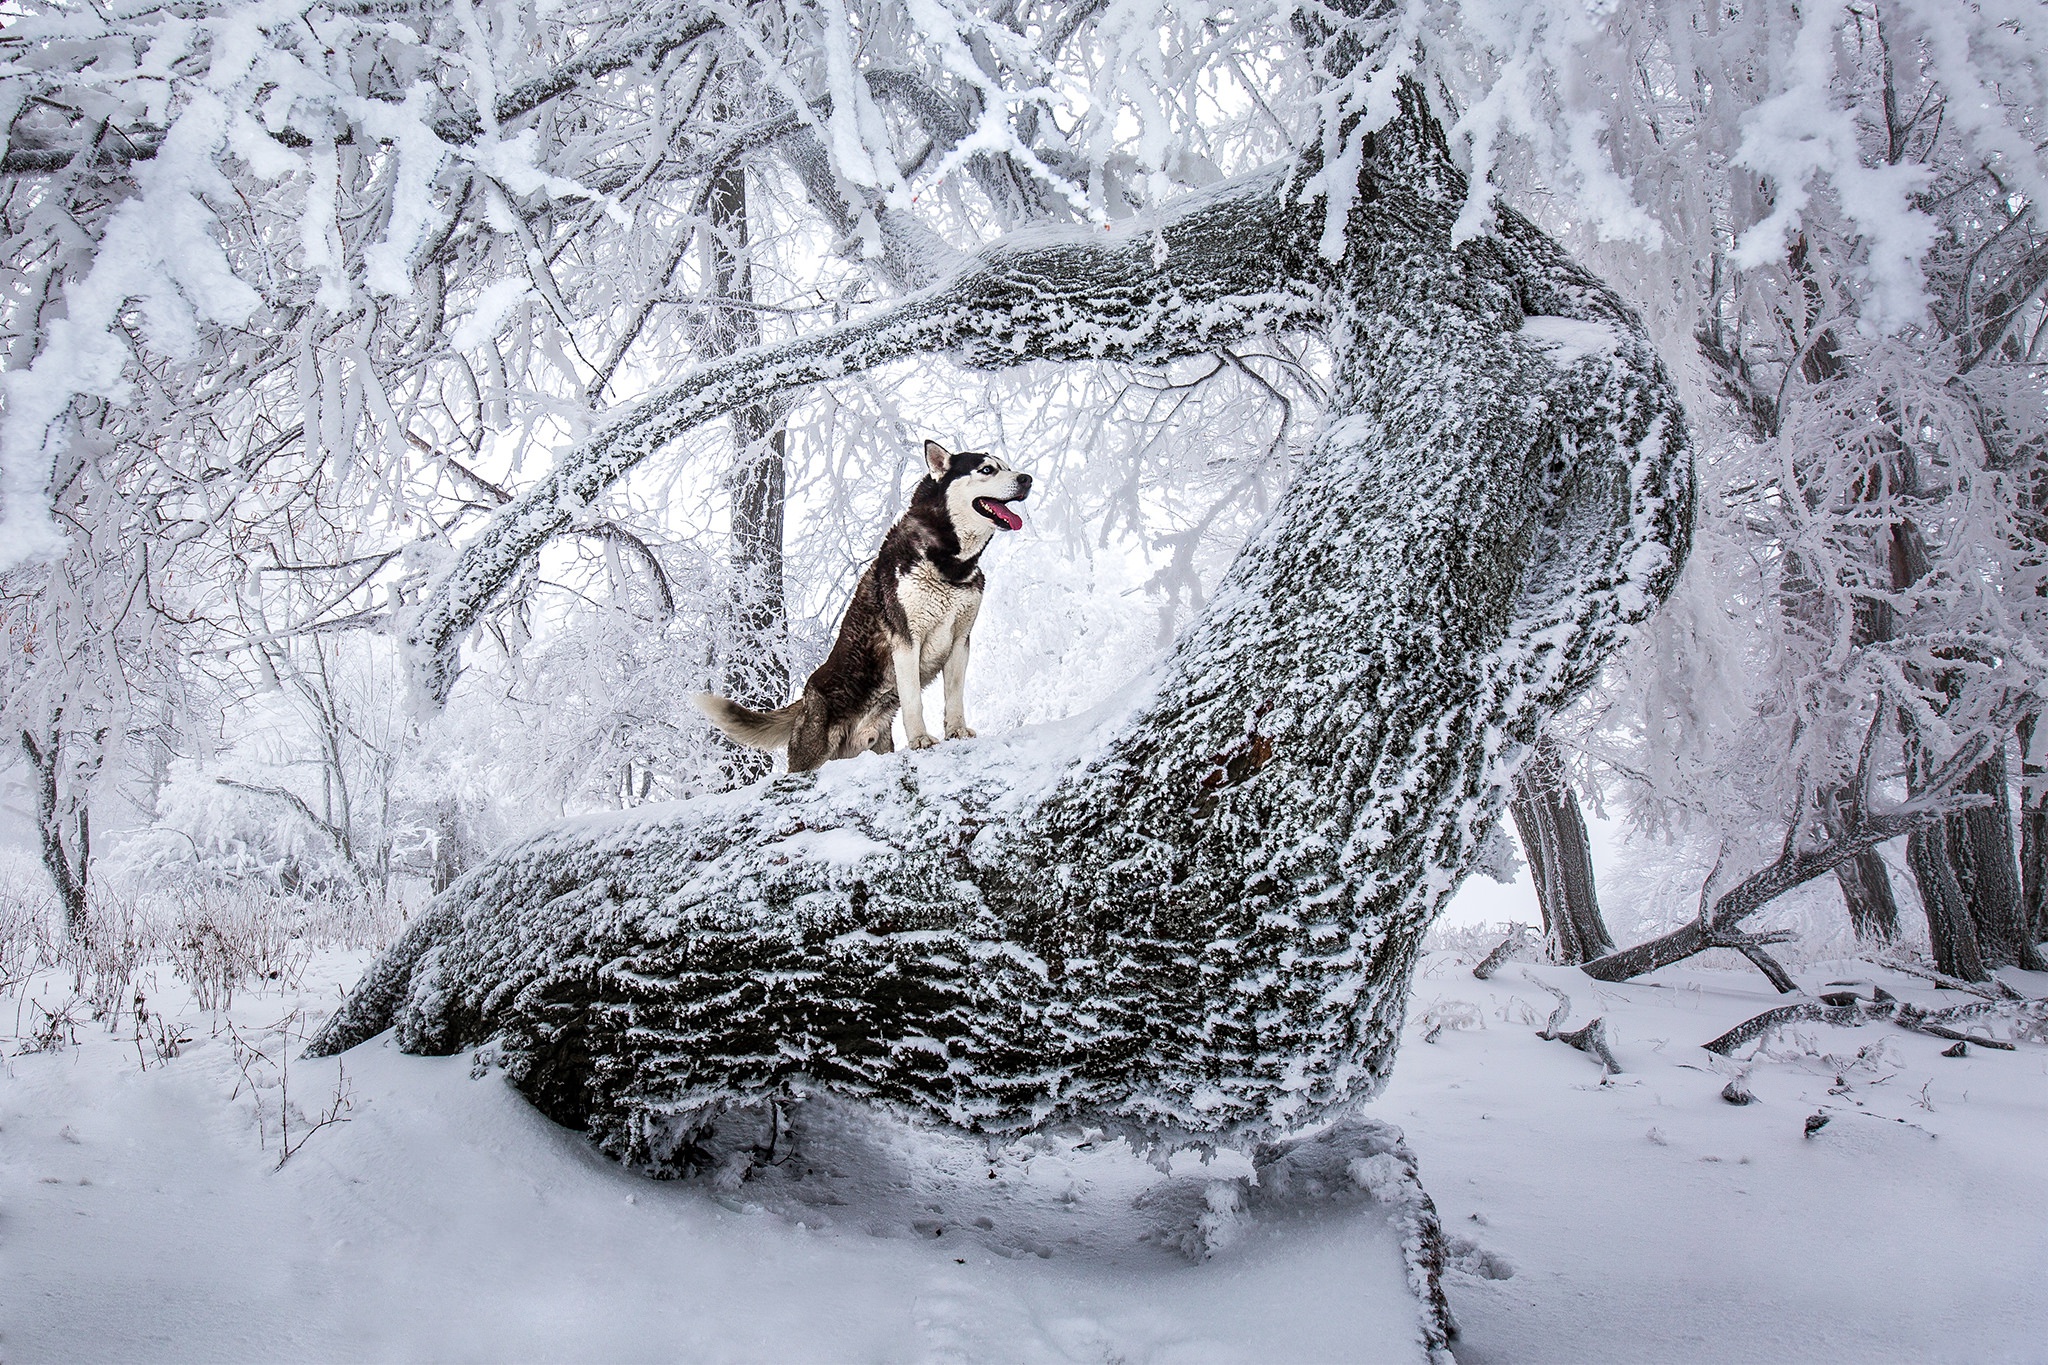 Скачать обои бесплатно Животные, Зима, Собаки, Снег, Дерево, Собака, Хаски картинка на рабочий стол ПК